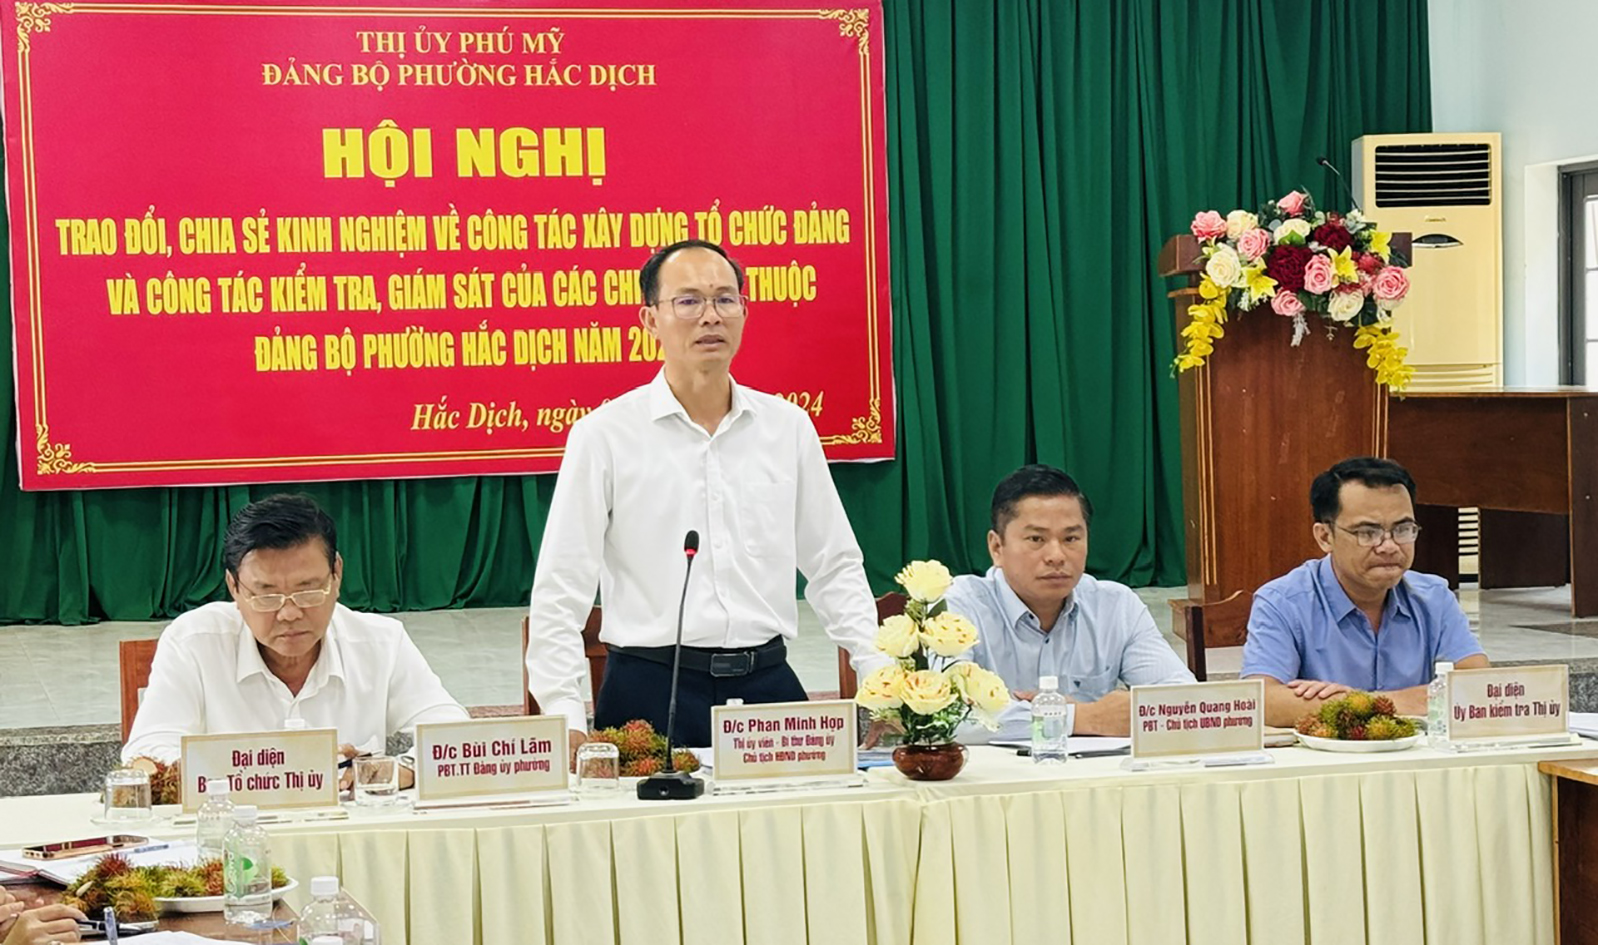 Ông Phan Minh Hợp, Bí thư Đảng ủy phường Hắc Dịch điều hành hội nghị.